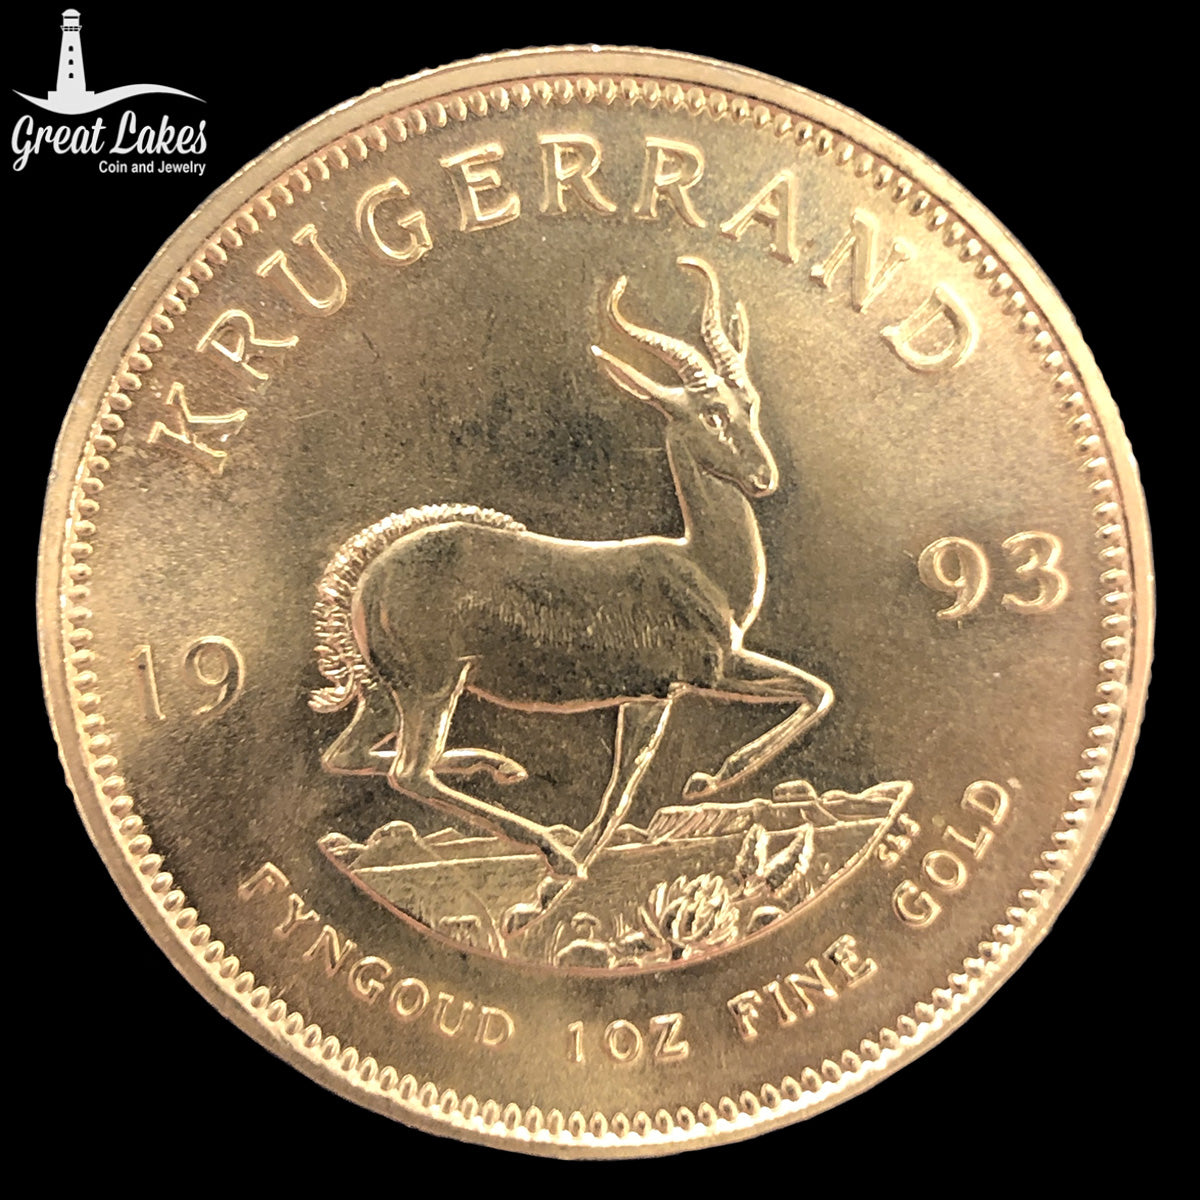 1993 South African 1 oz Gold Krugerrand (BU)